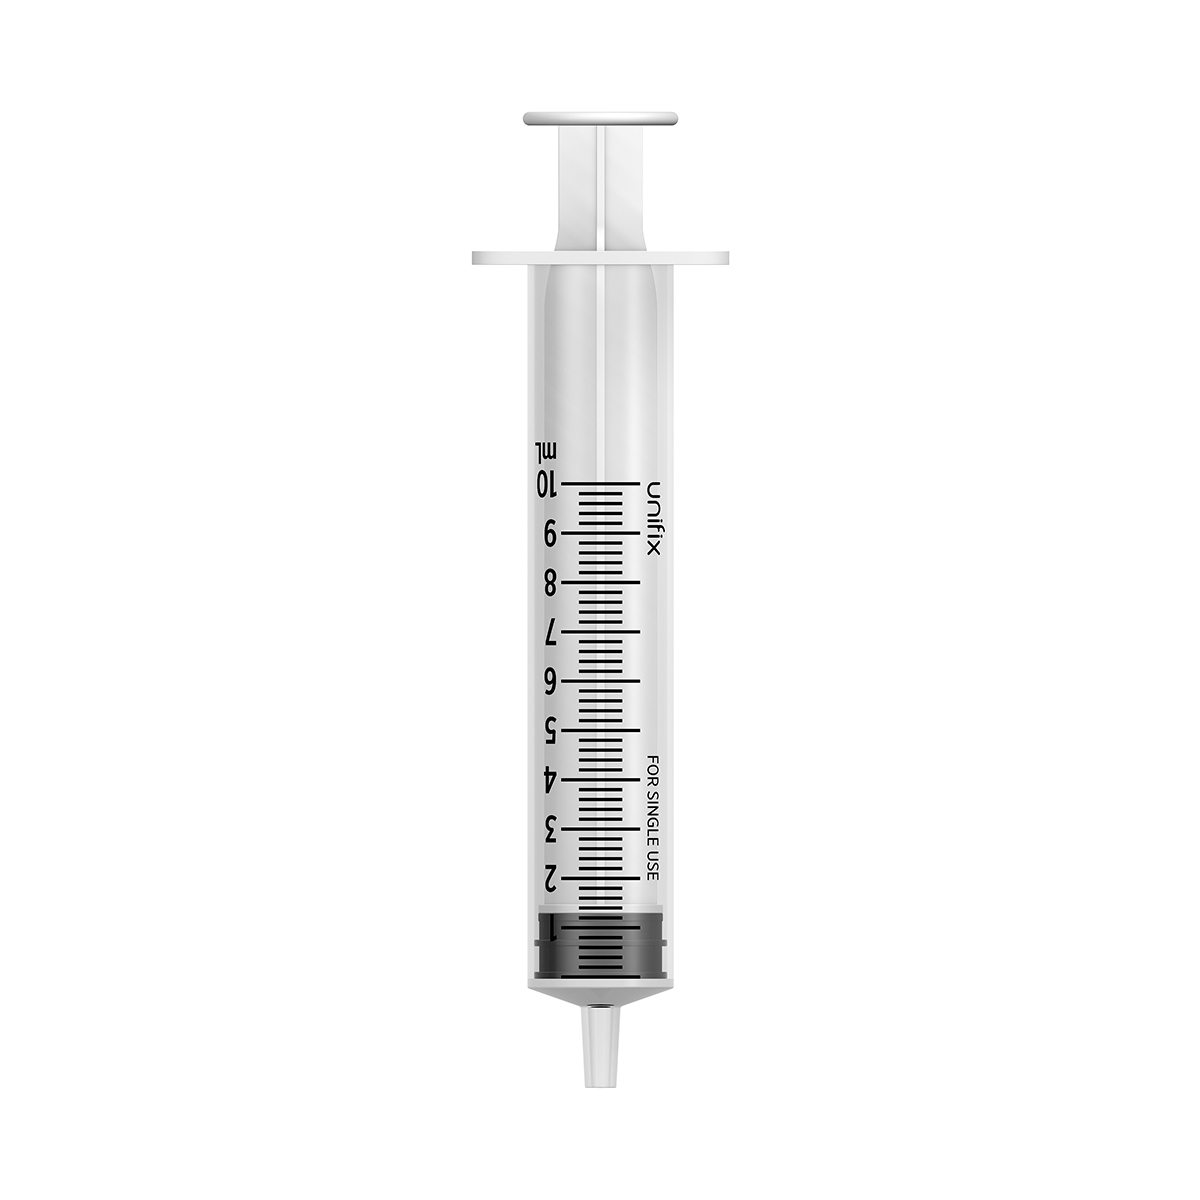 Unifix 10ml luer slip syringe